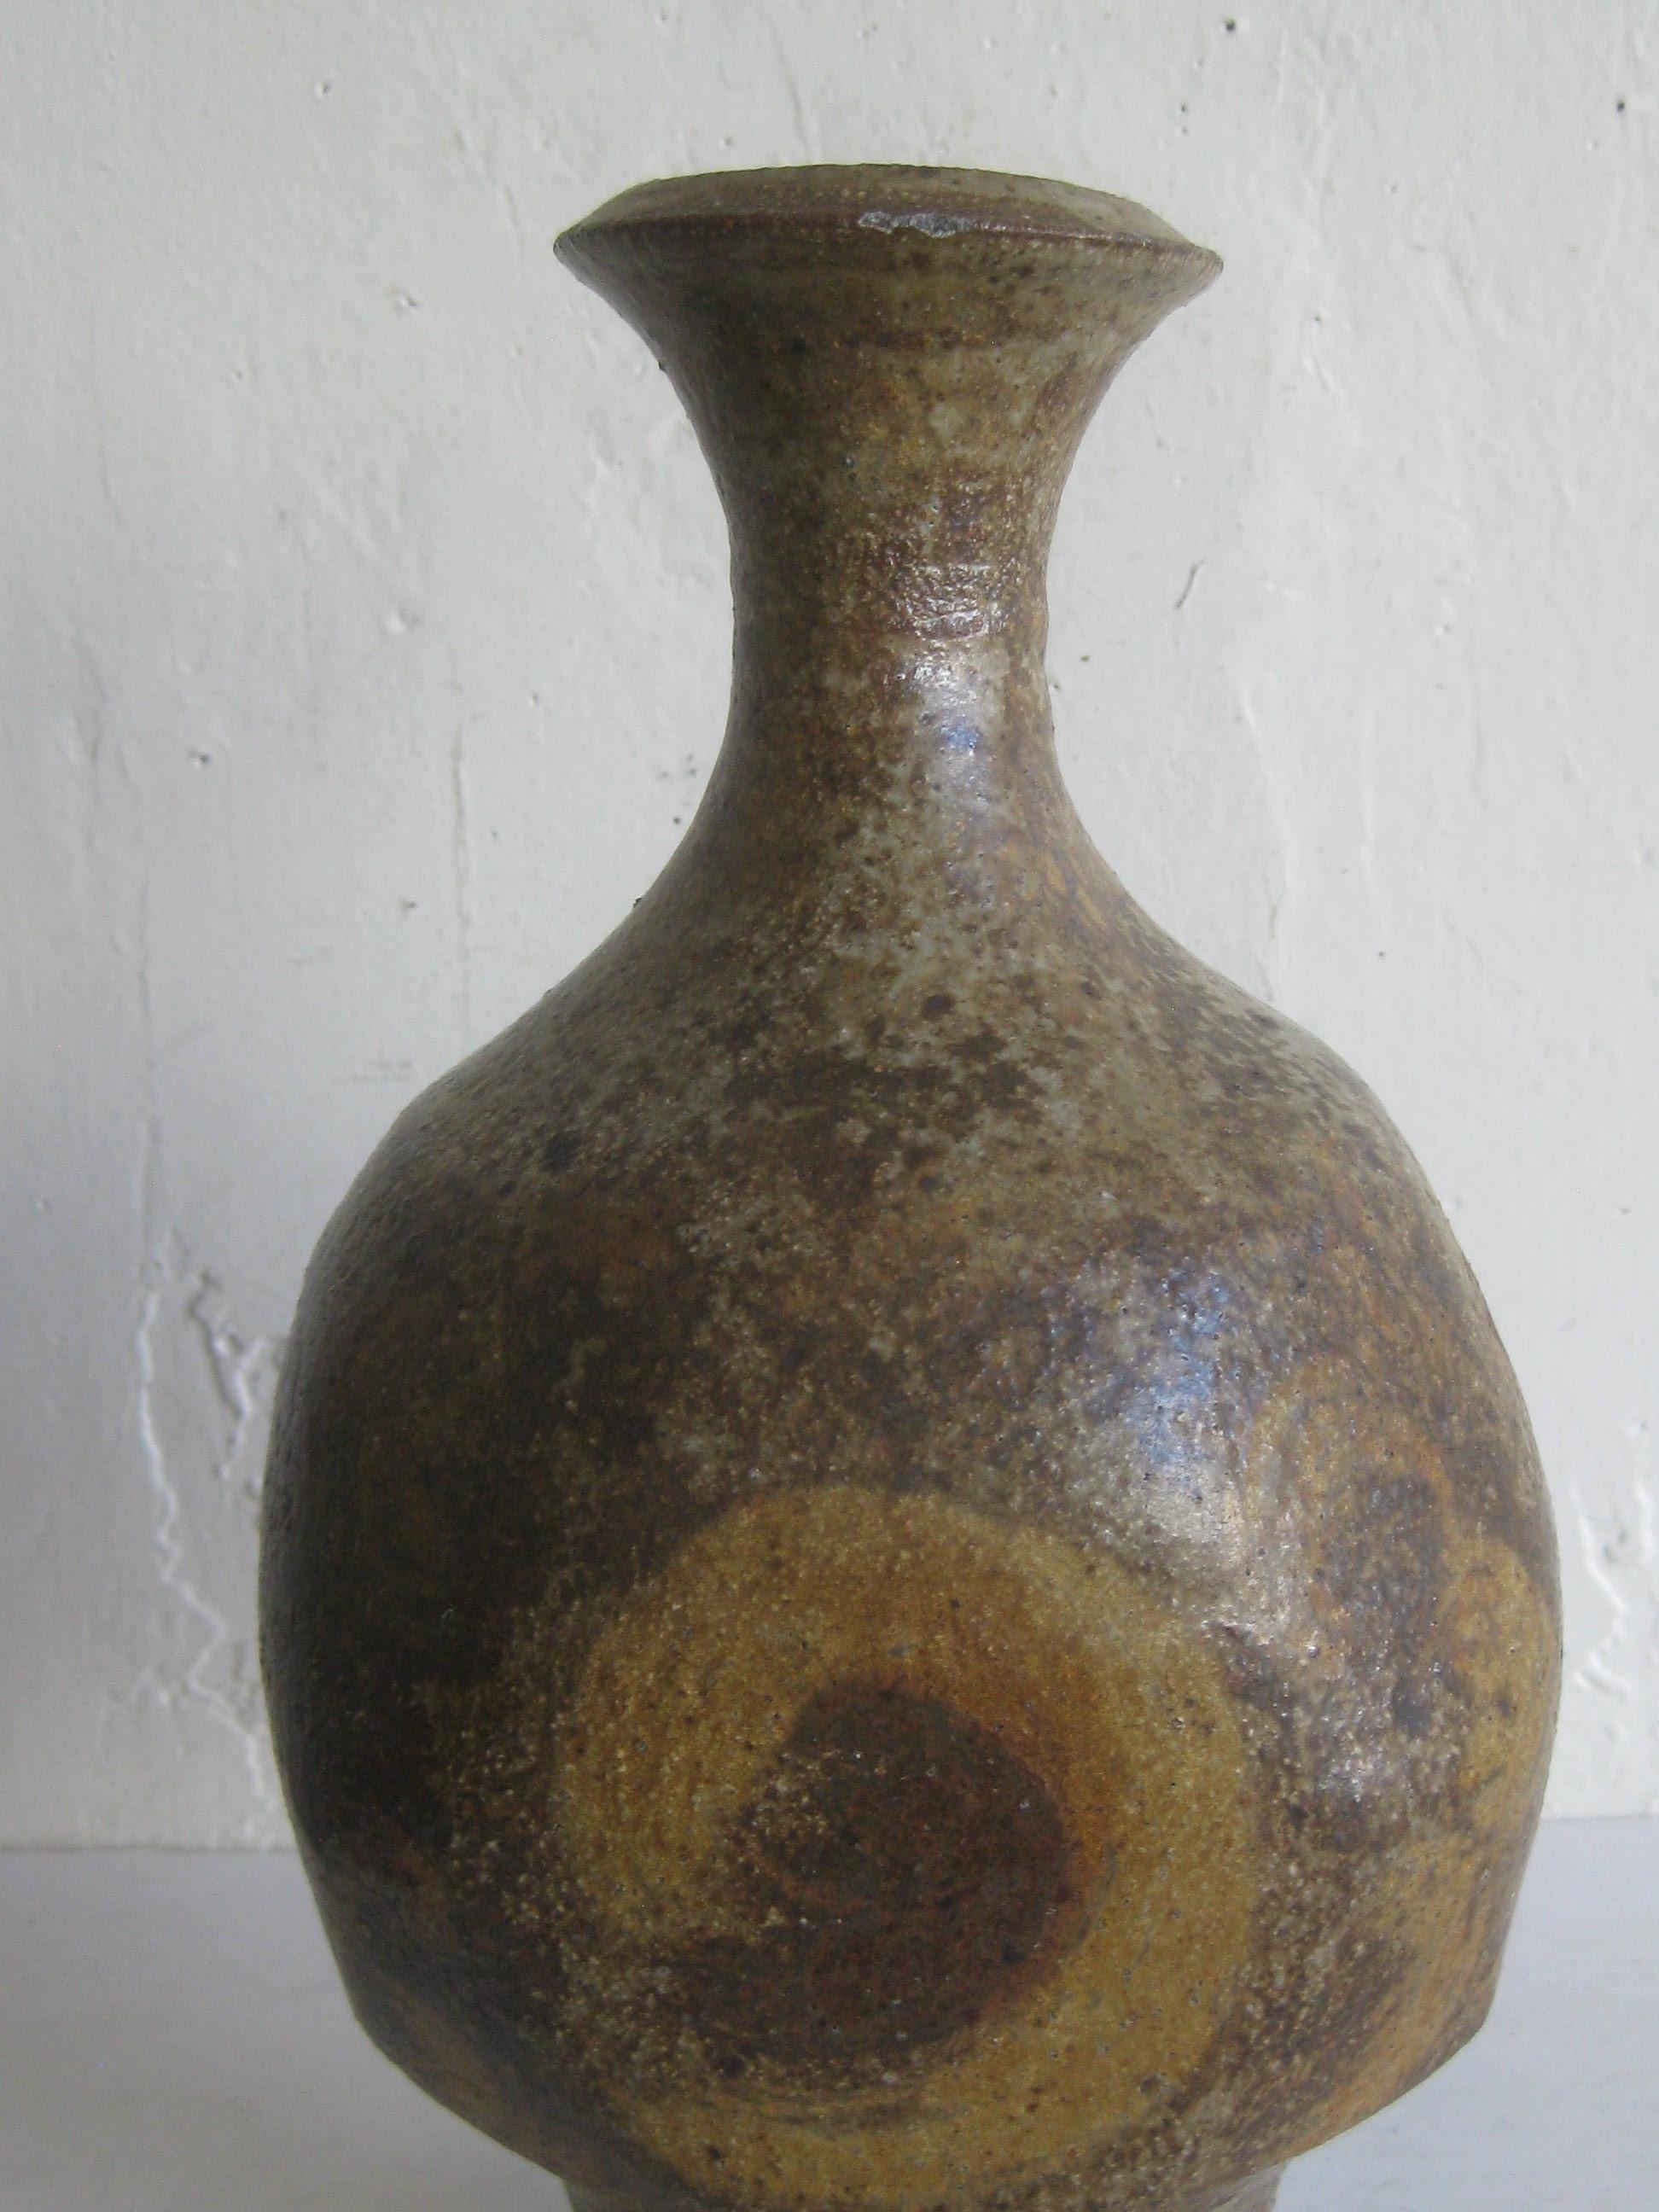 Großartige Vase/Gefäß aus Studiokeramik des bekannten britischen Künstlers Robert Fournier. Die Vase hat ein wunderschönes Design und Form. Signiert vom Künstler mit 